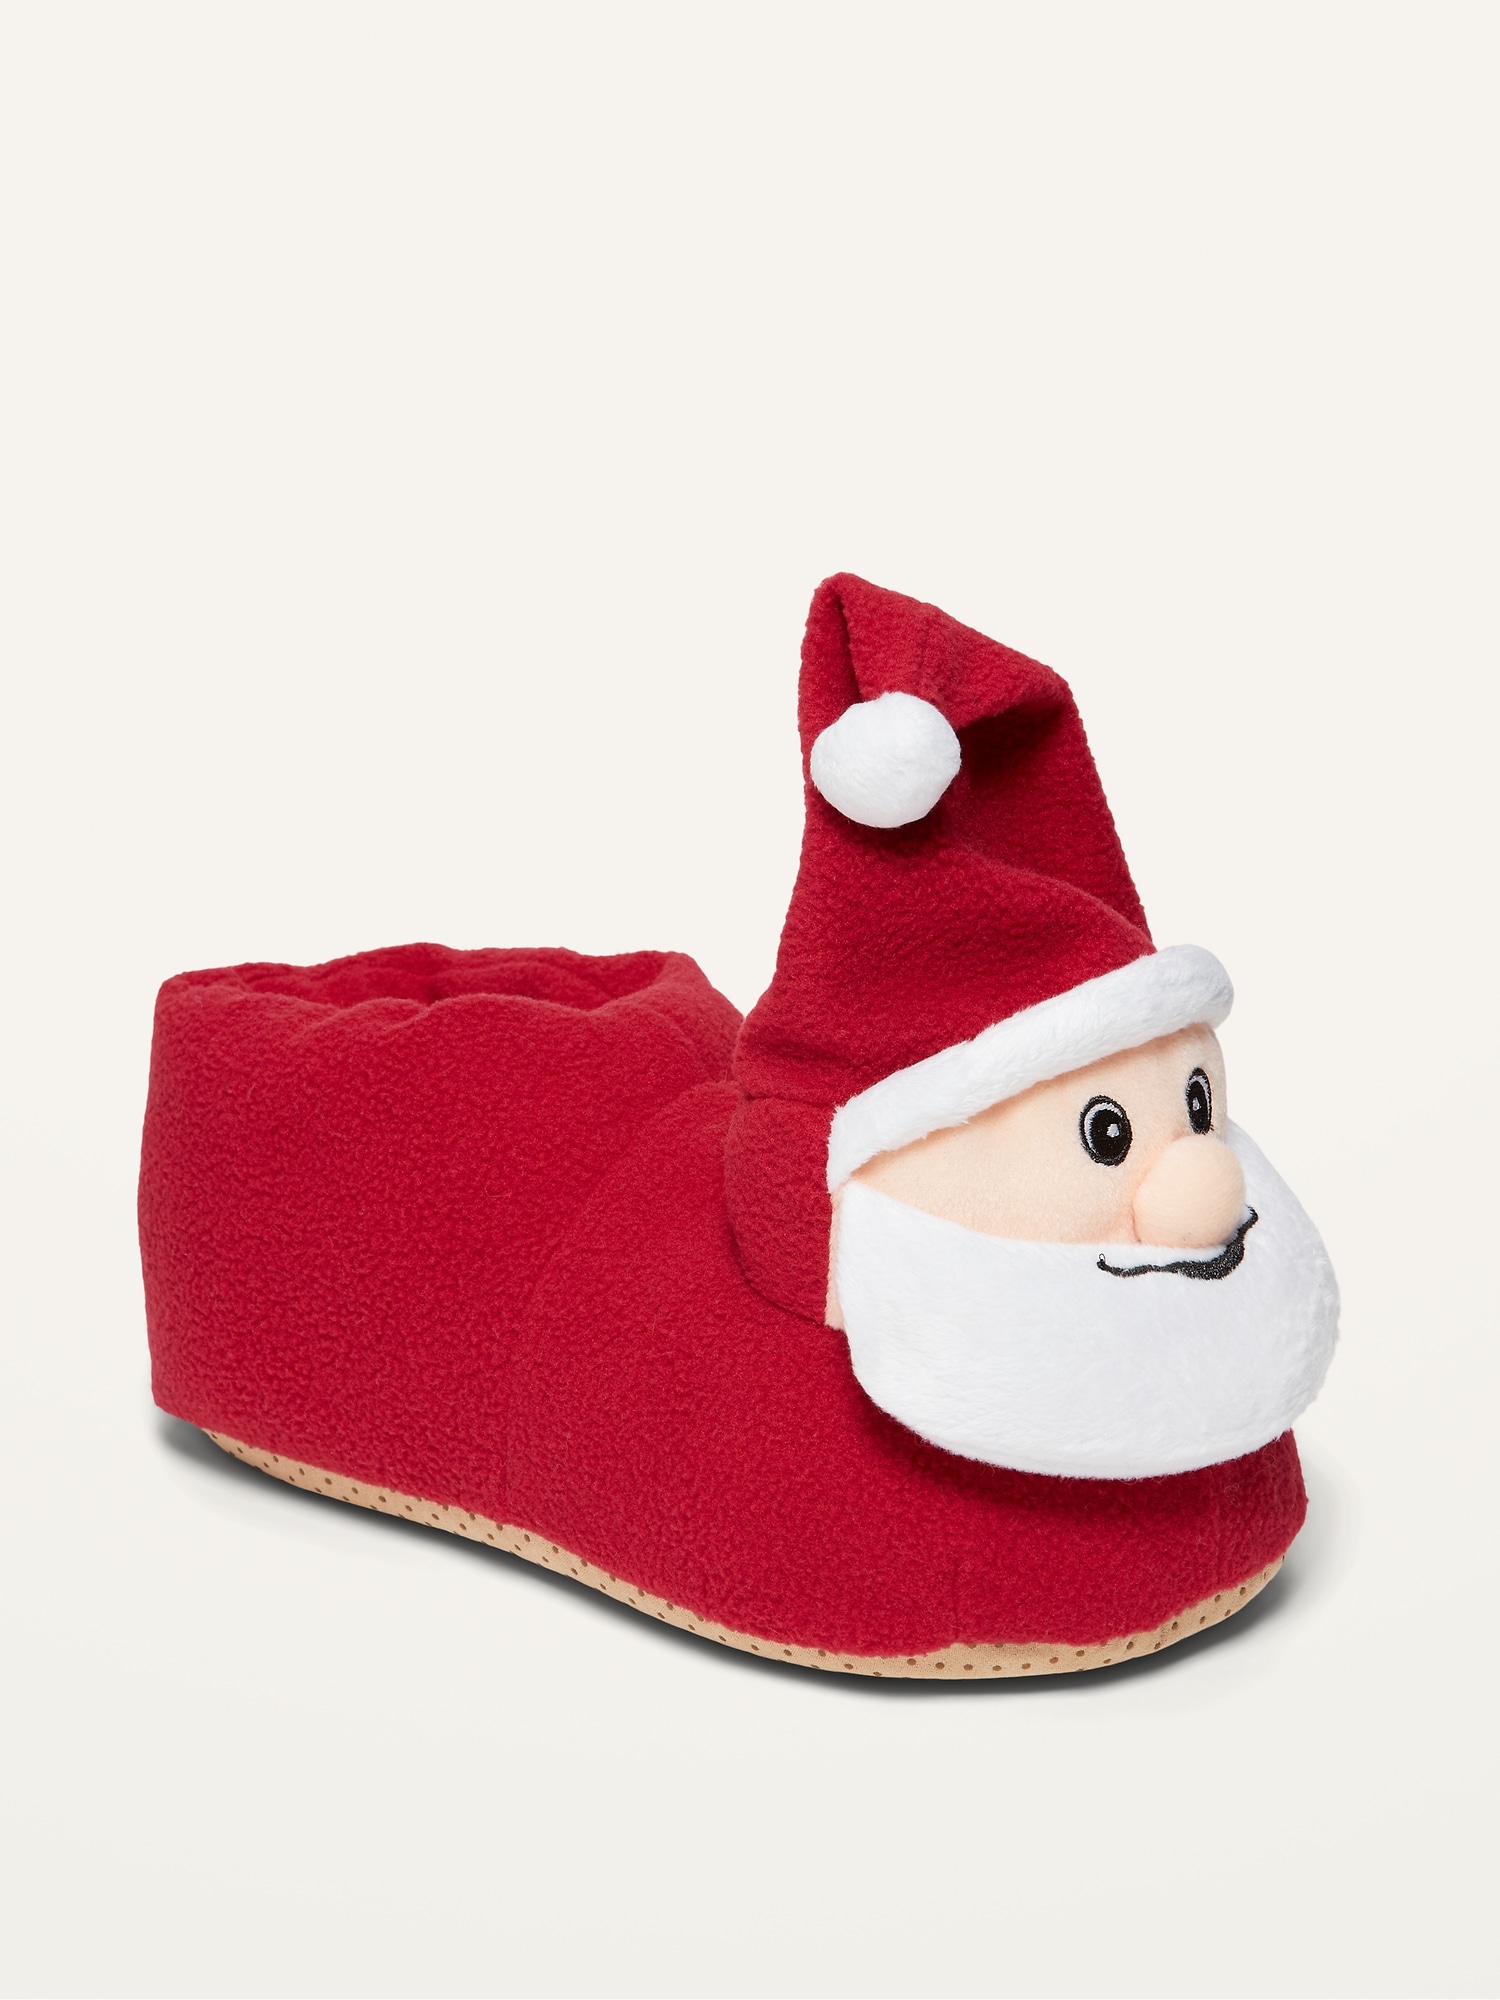 mens christmas slippers